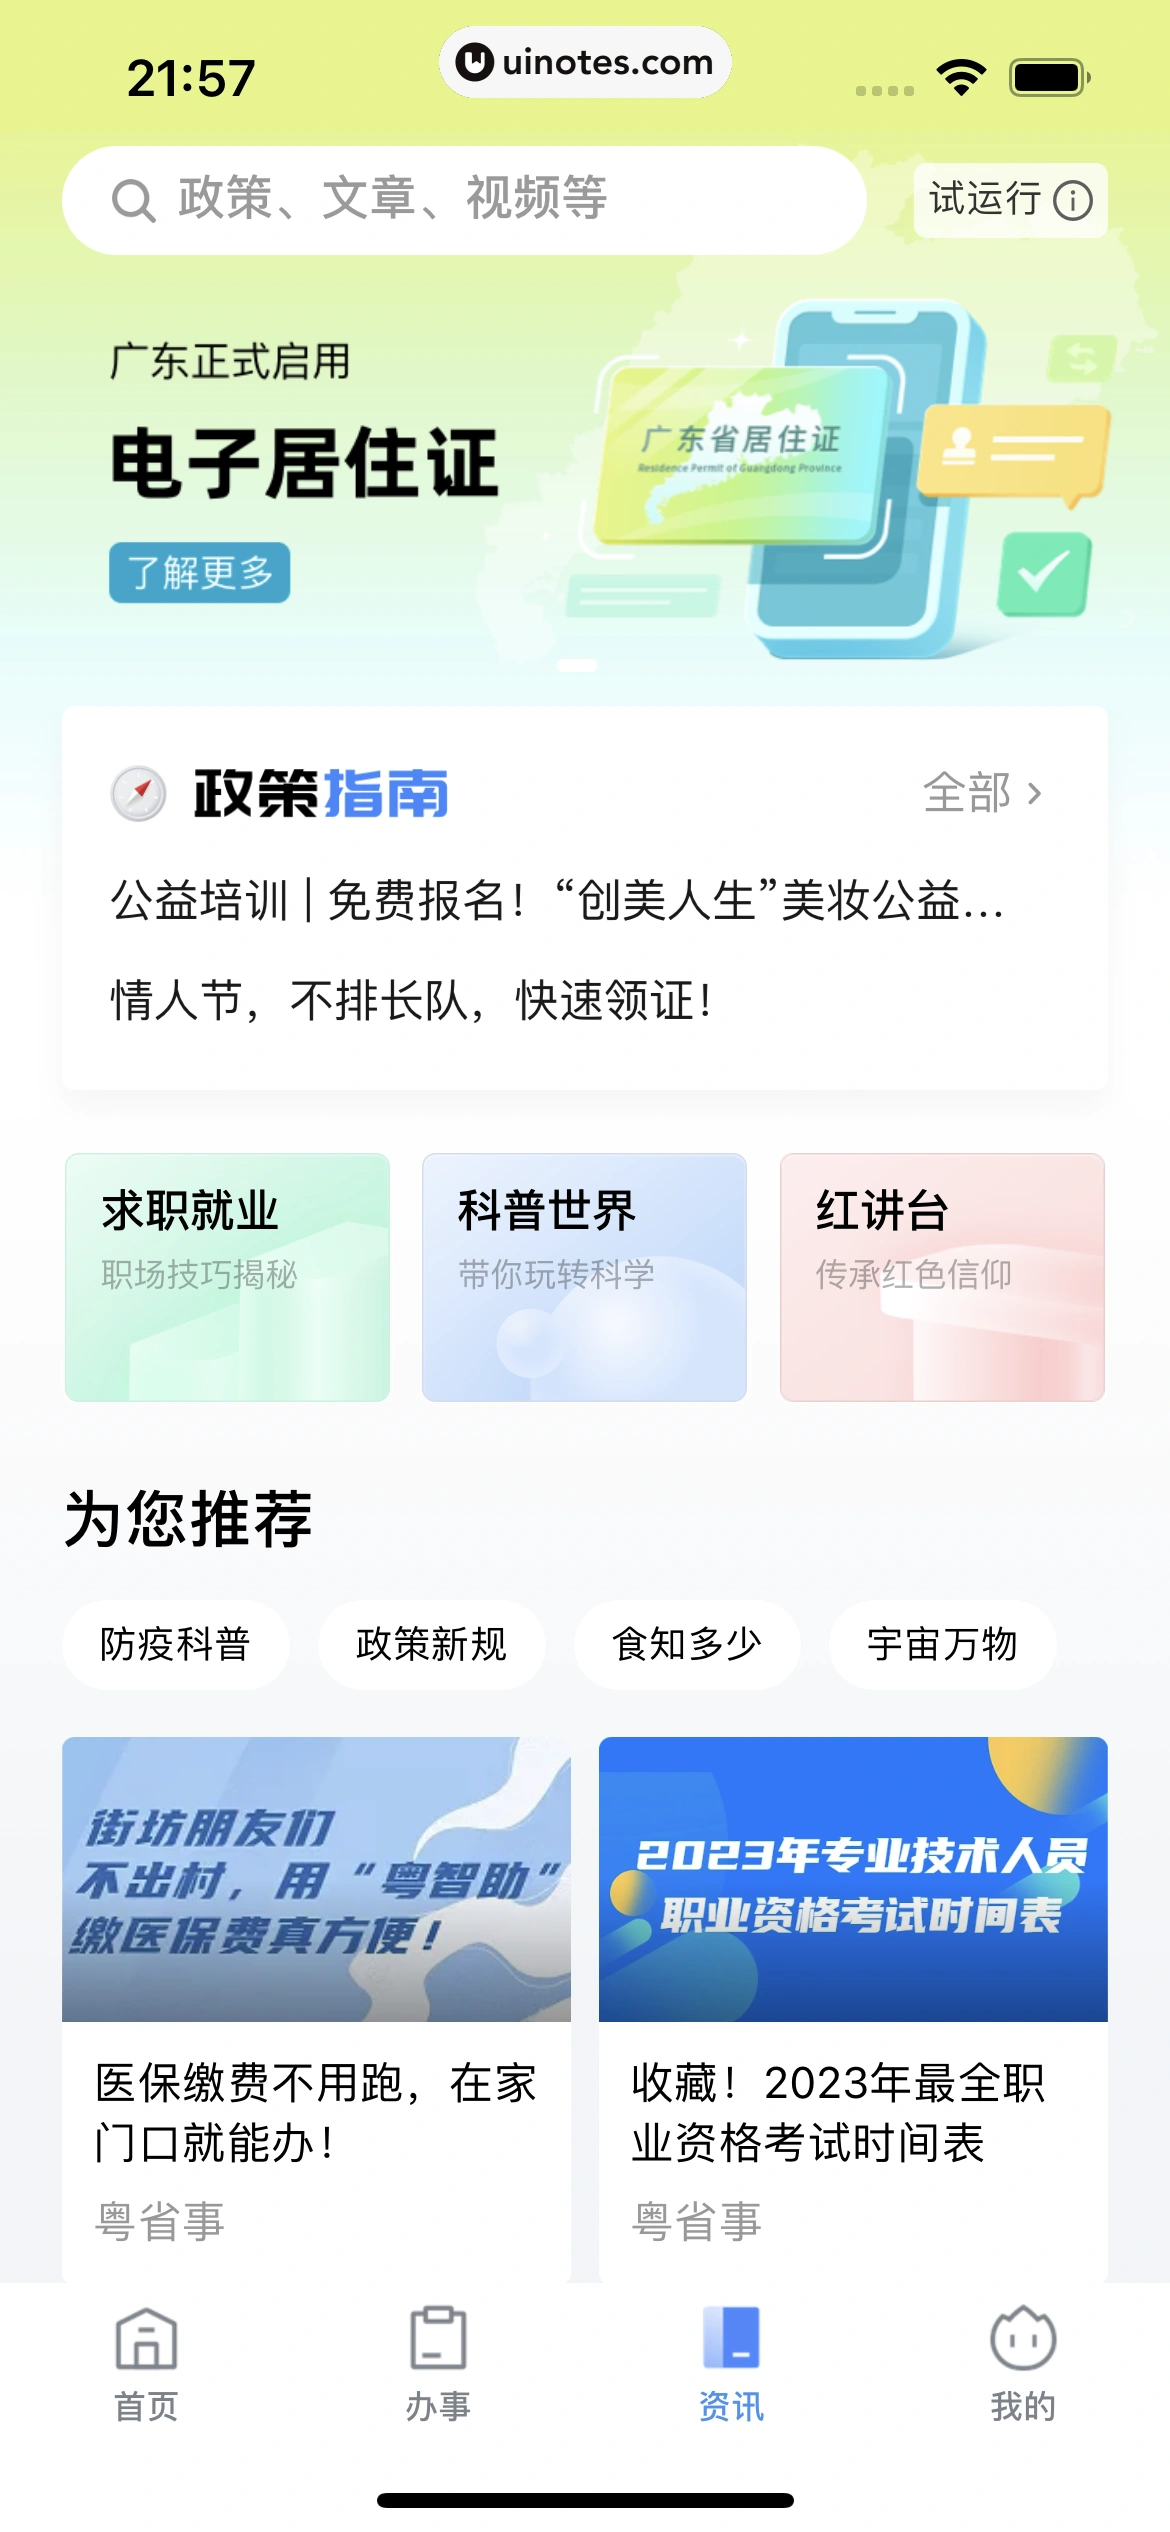 粤省事 App 截图 118 - UI Notes